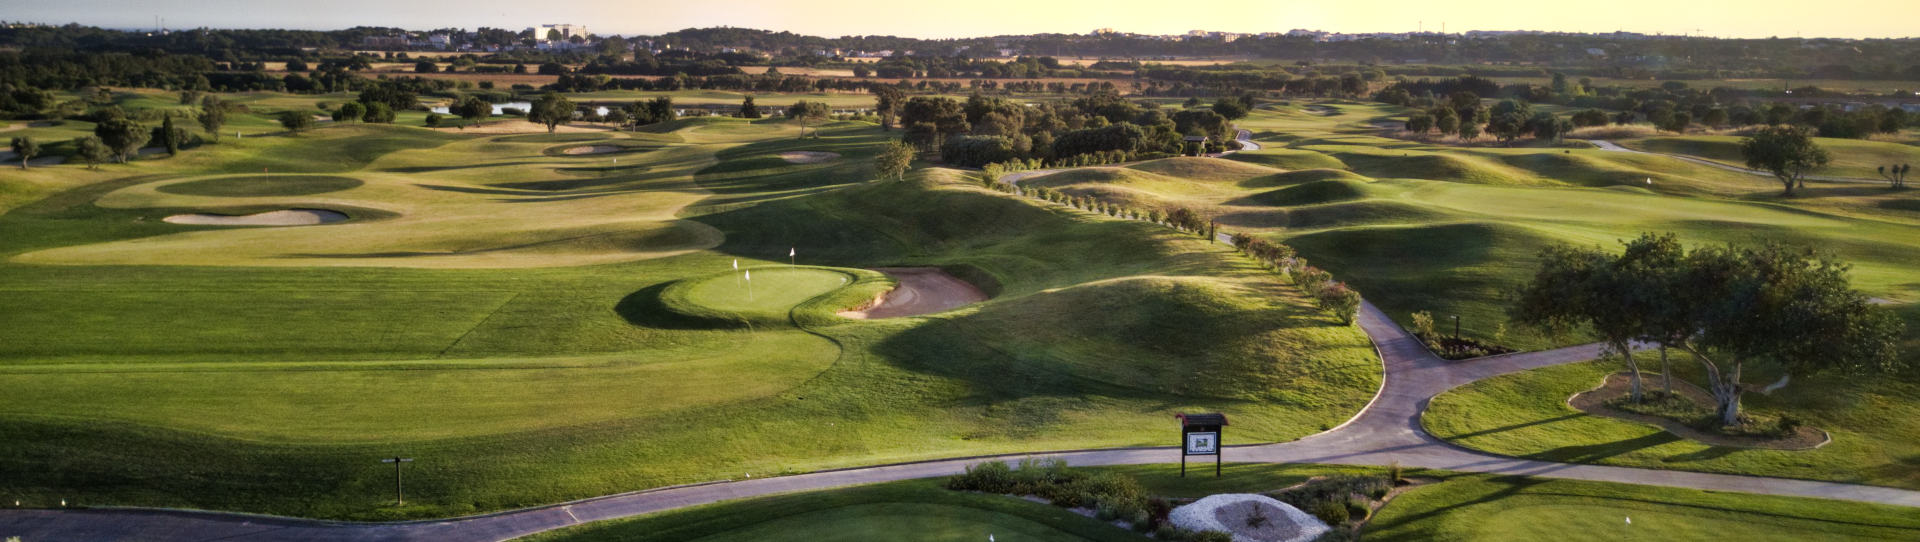 Portugal golf courses - Vilamoura Dom Pedro Victoria - Photo 3